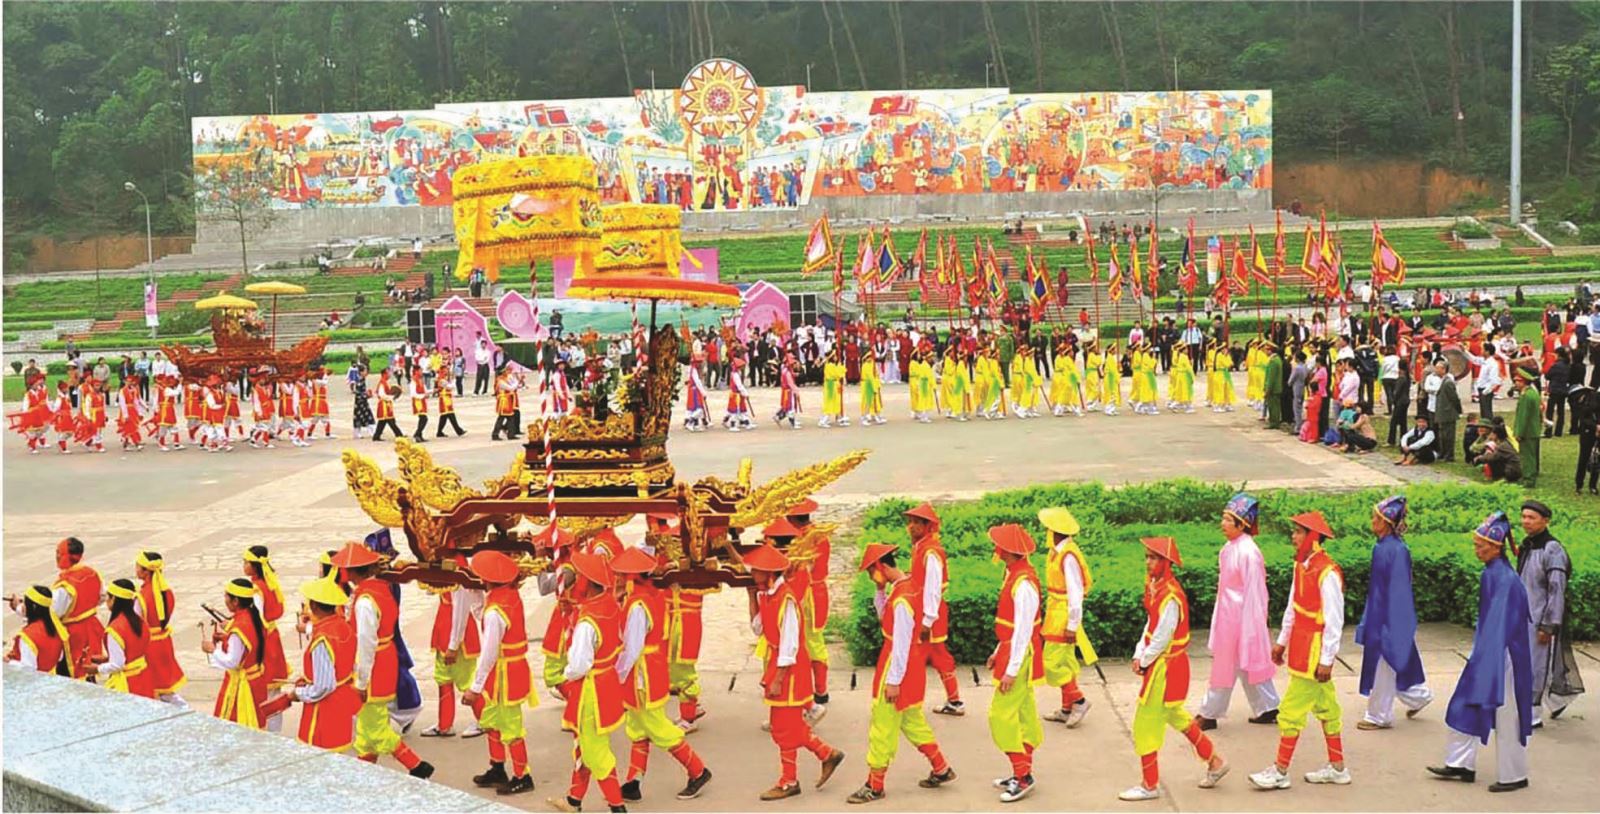 Lễ hội đền Hùng - điểm hội tụ văn hóa tâm linh của người dân đất Việt